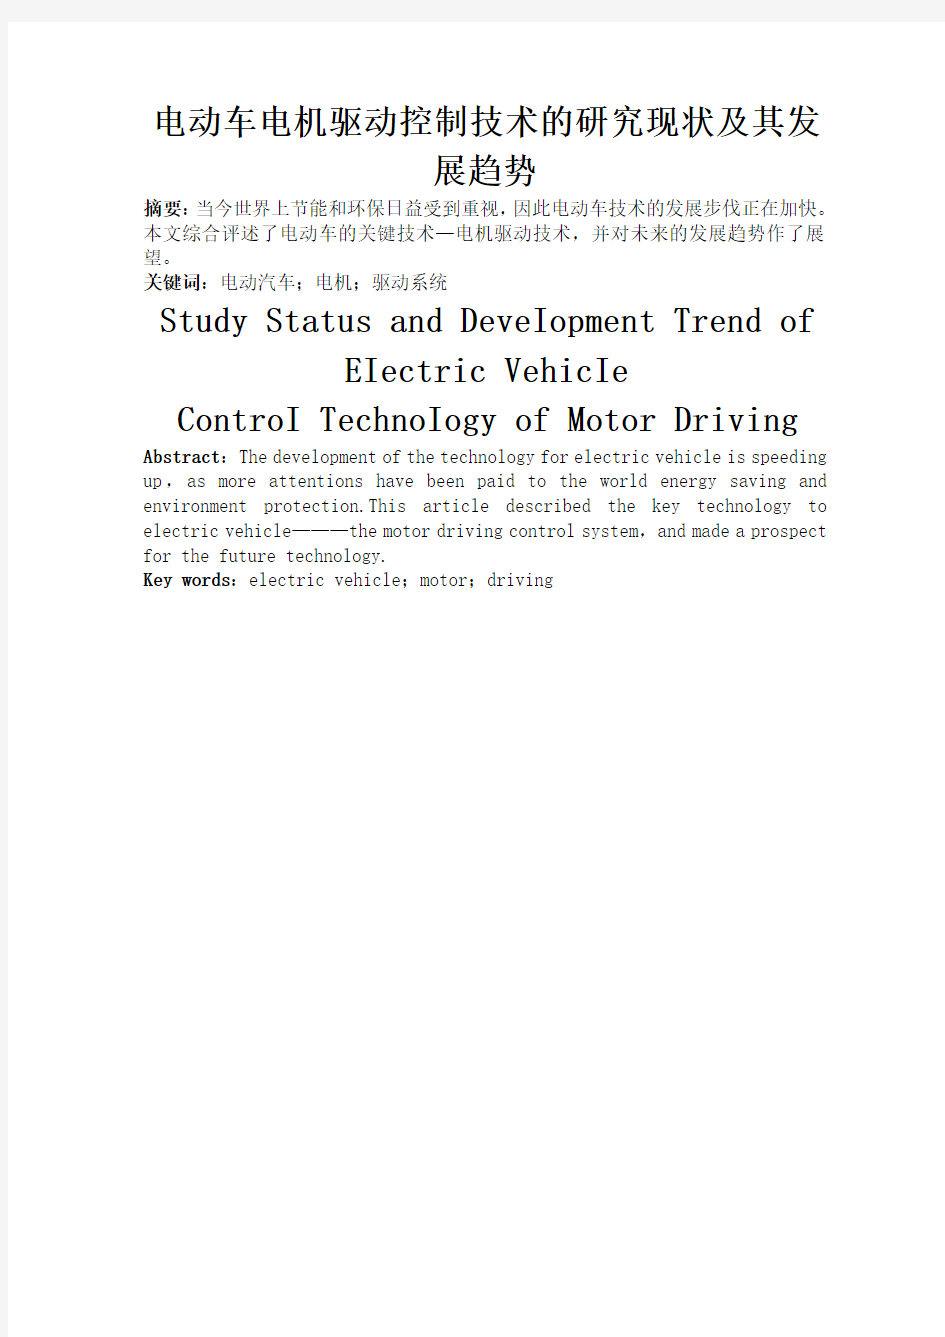 学长福利——电动汽车电机驱动控制技术的研究现状与其发展趋势